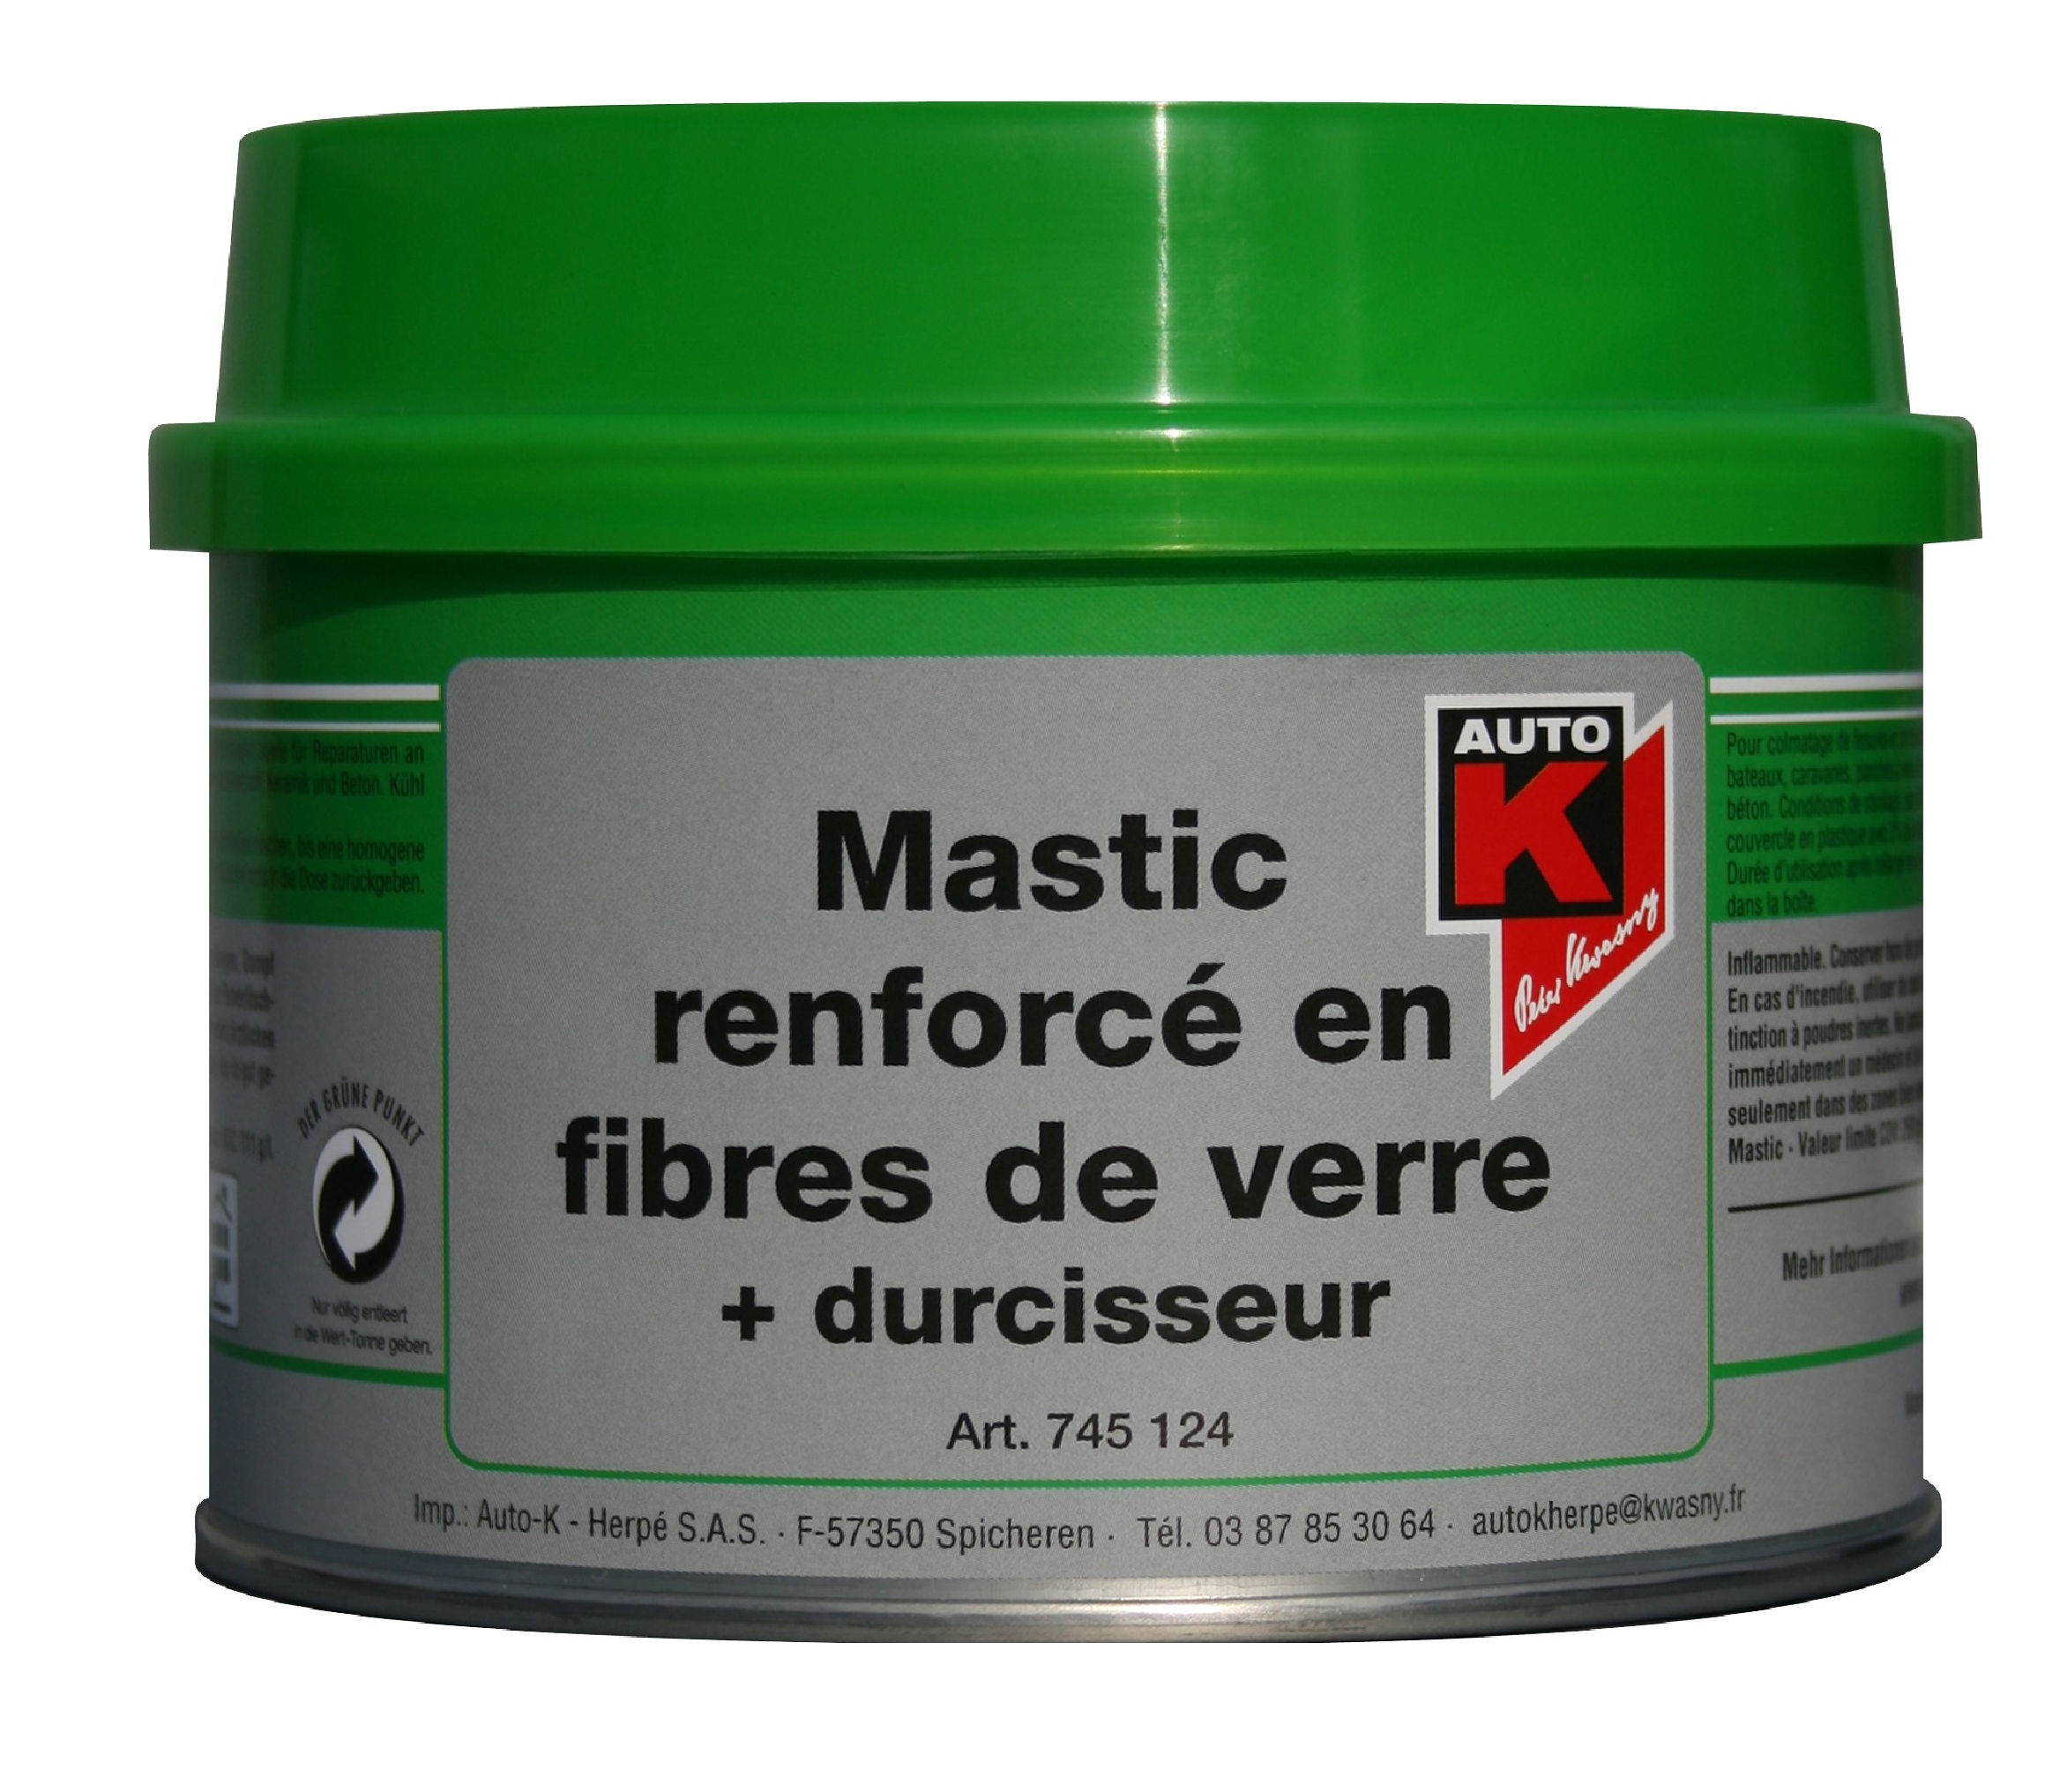 MASTIC RENFORCÉ FIBRES VERRE + Durcisseur 1KG - AUTO-K 745124